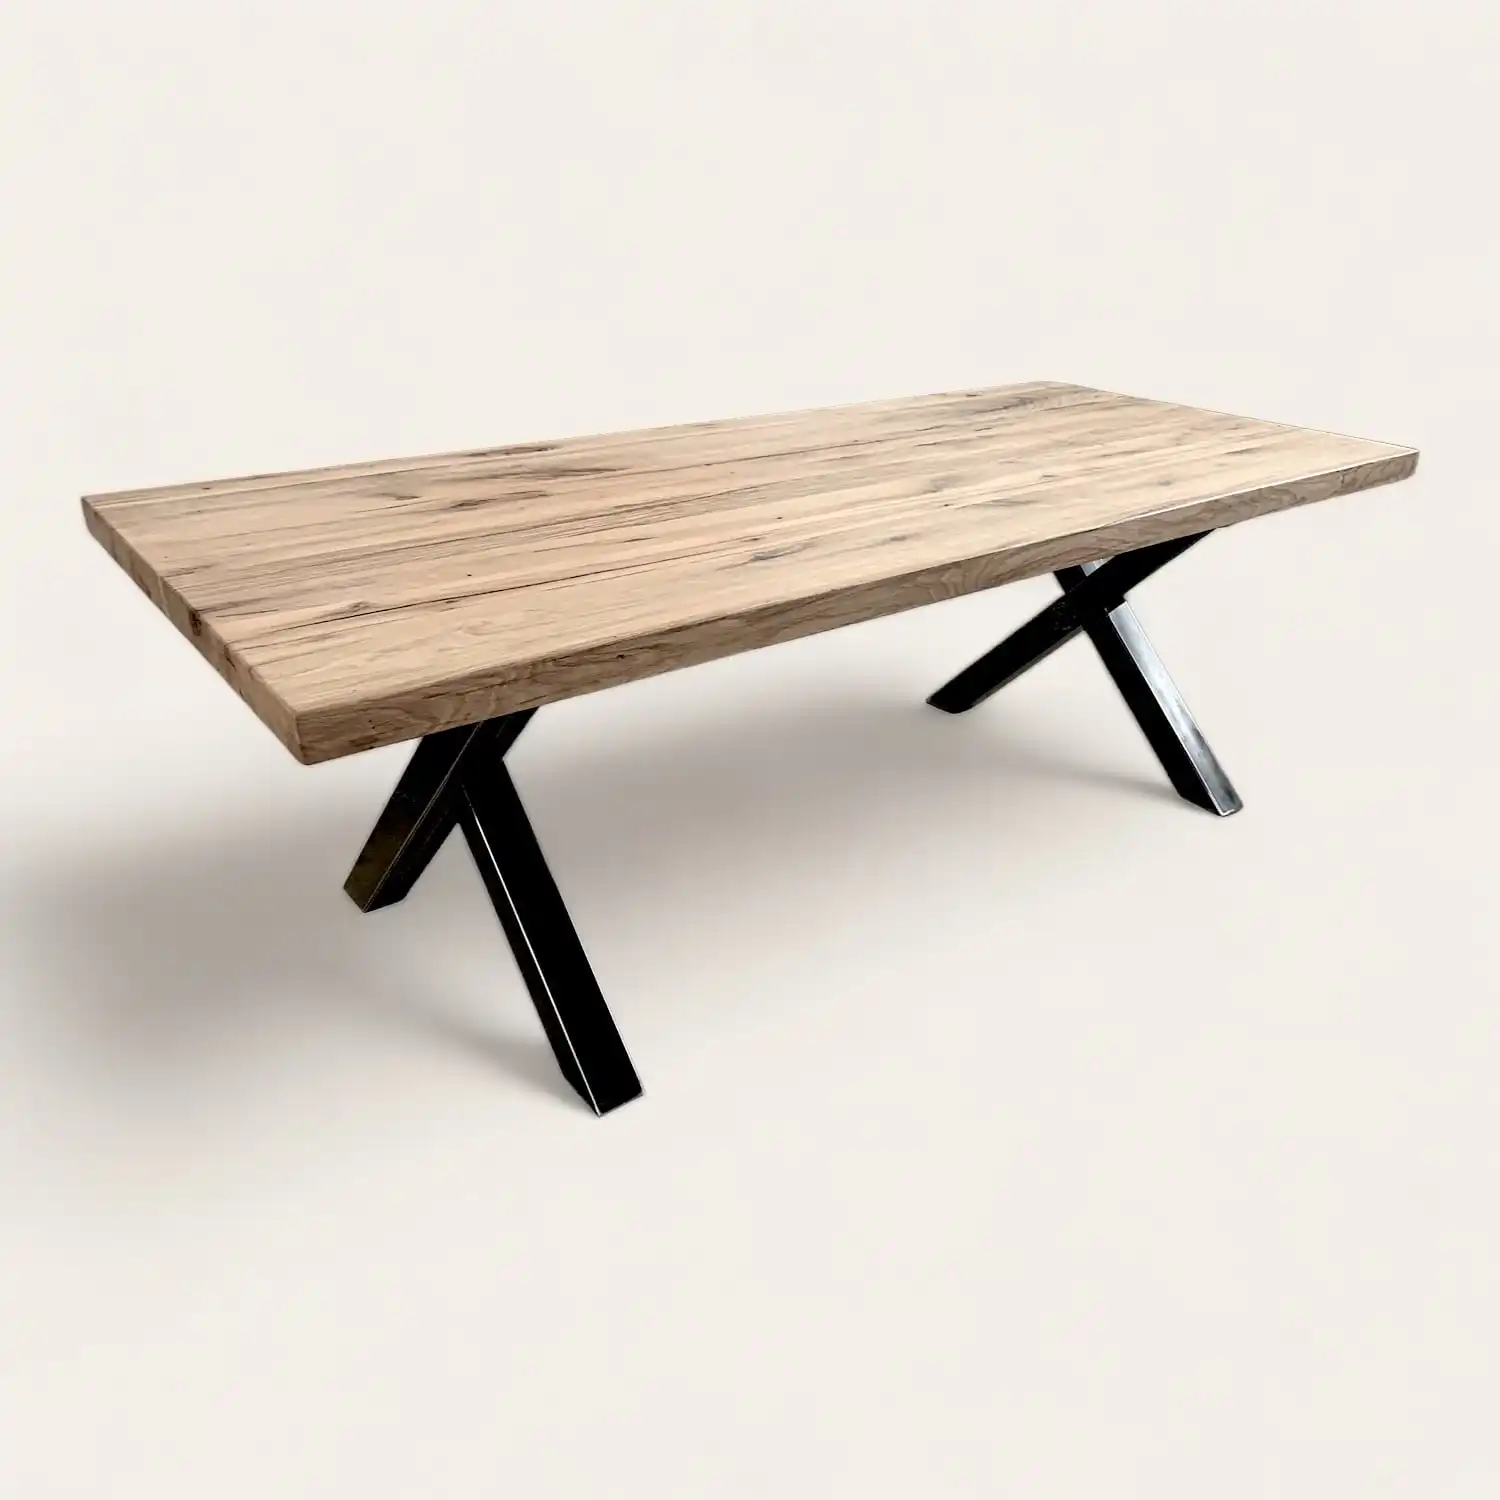  Table de salle à manger en bois vieilli avec pieds croisés en métal noir, combinant esthétique rustique et design contemporain. 